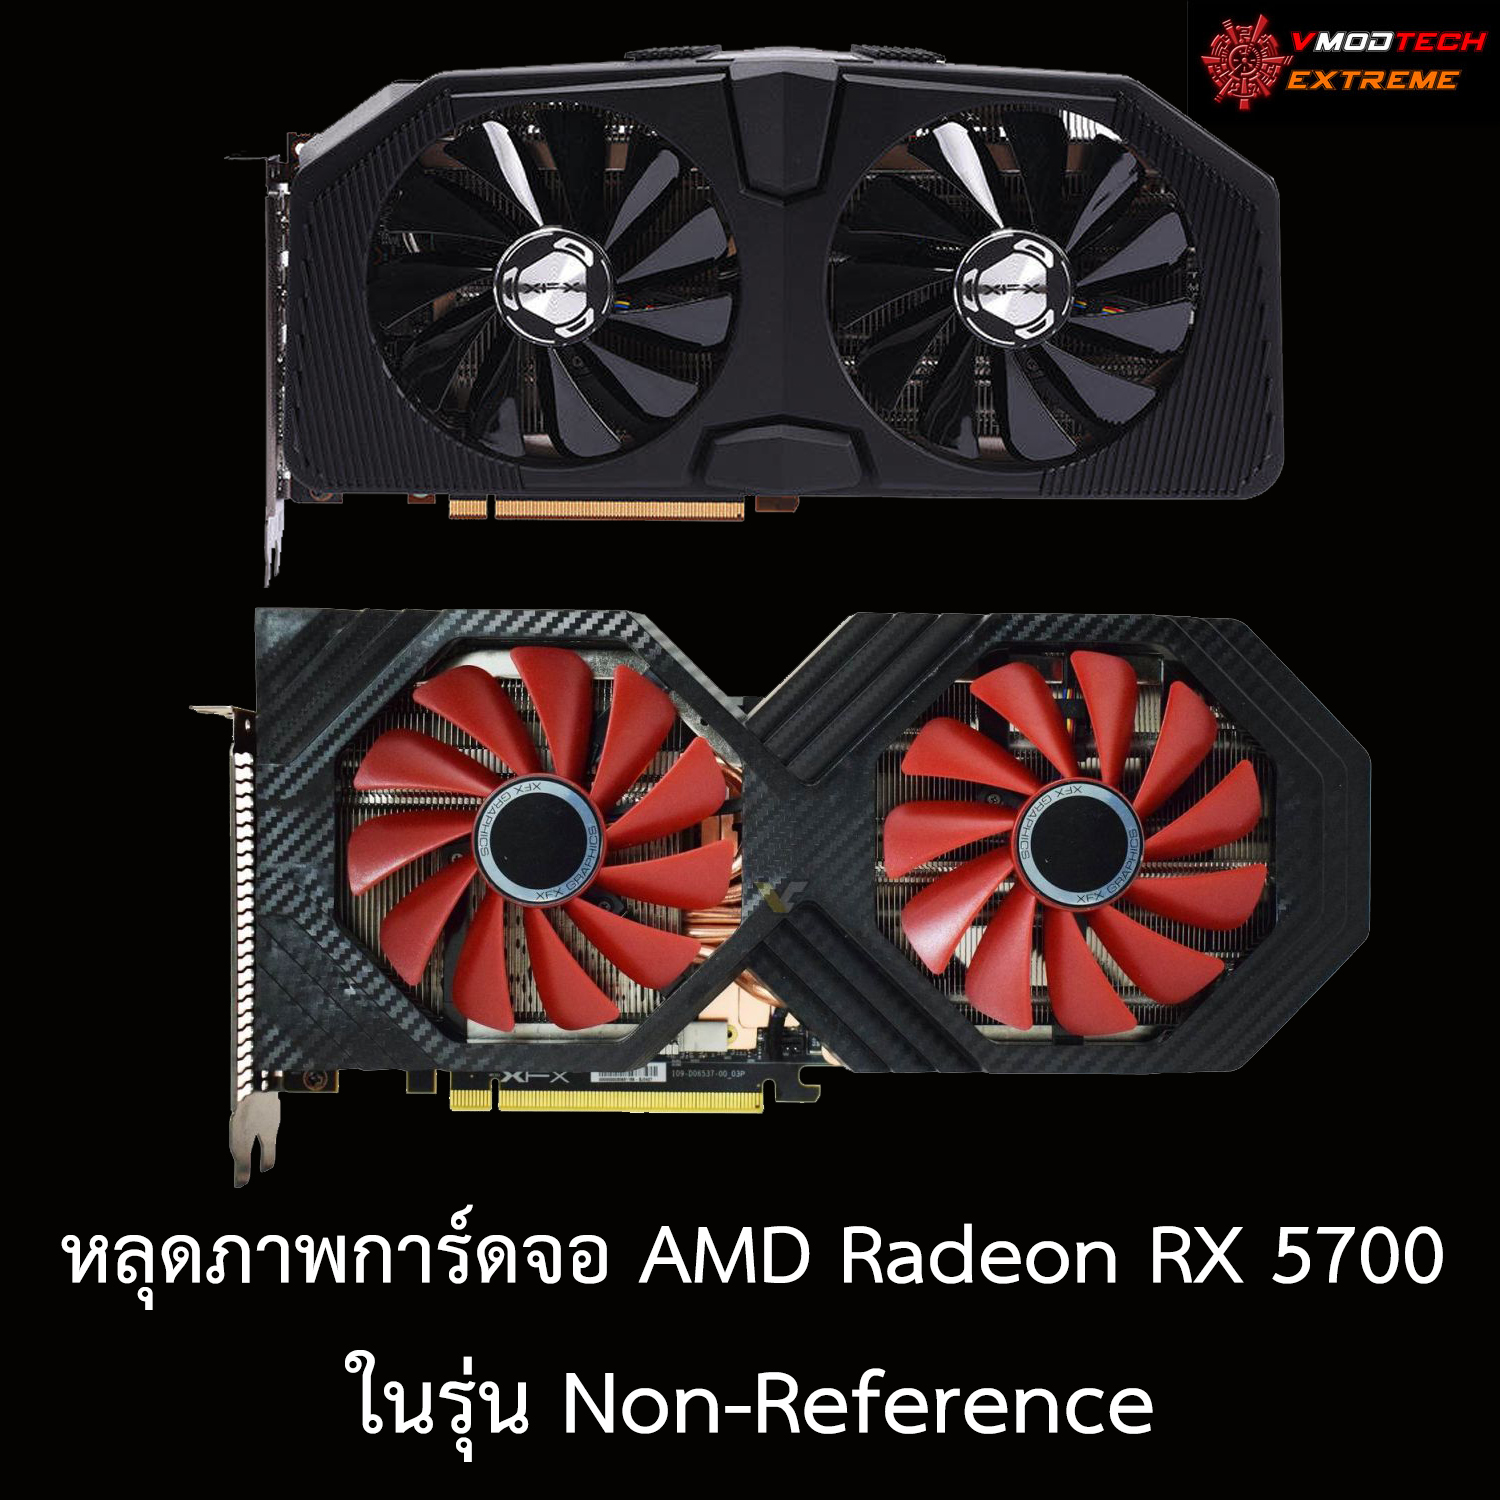 หลุดภาพการ์ดจอ AMD Radeon RX 5700 ในรุ่น Non-Reference 